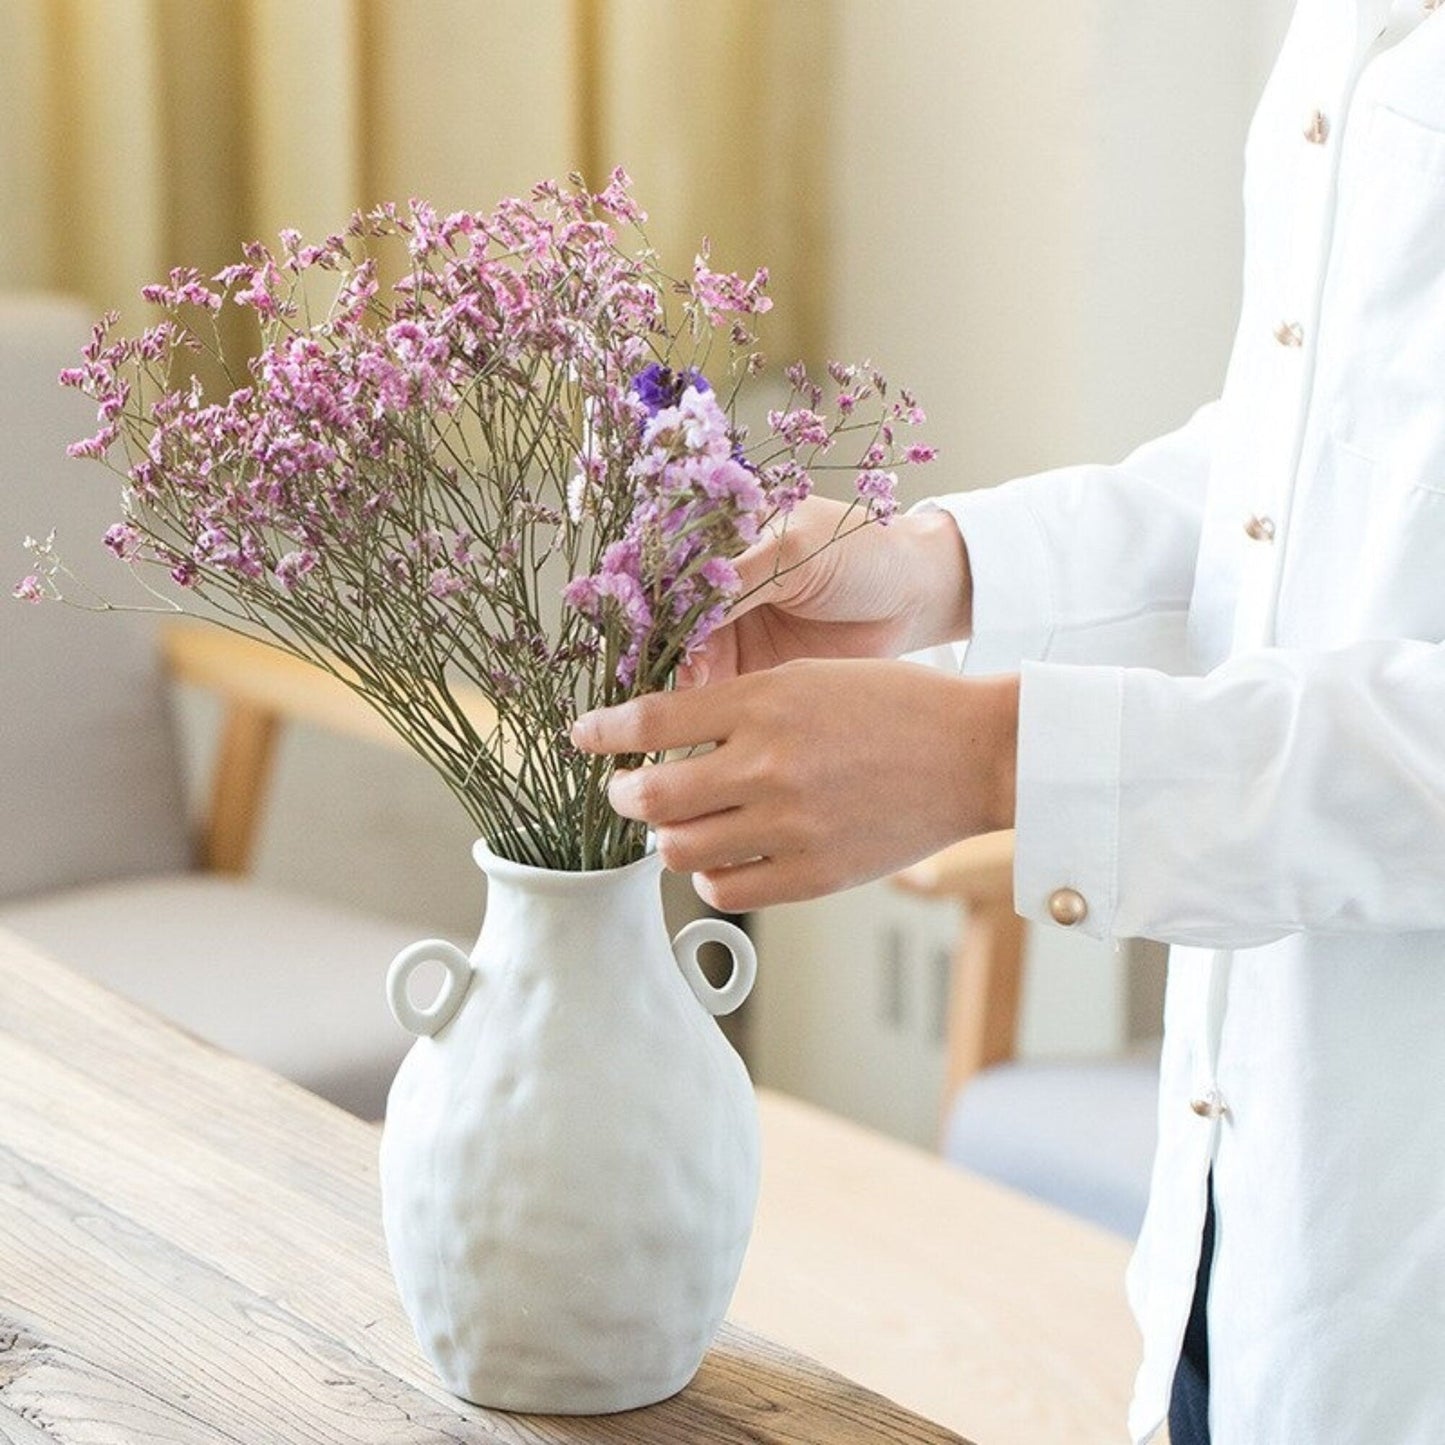 Abstract White Flower Vase | Decorative Vase, Minimalist Vase, Vases For Flowers, White Vase, Pampas Grass, Flower Pot - -